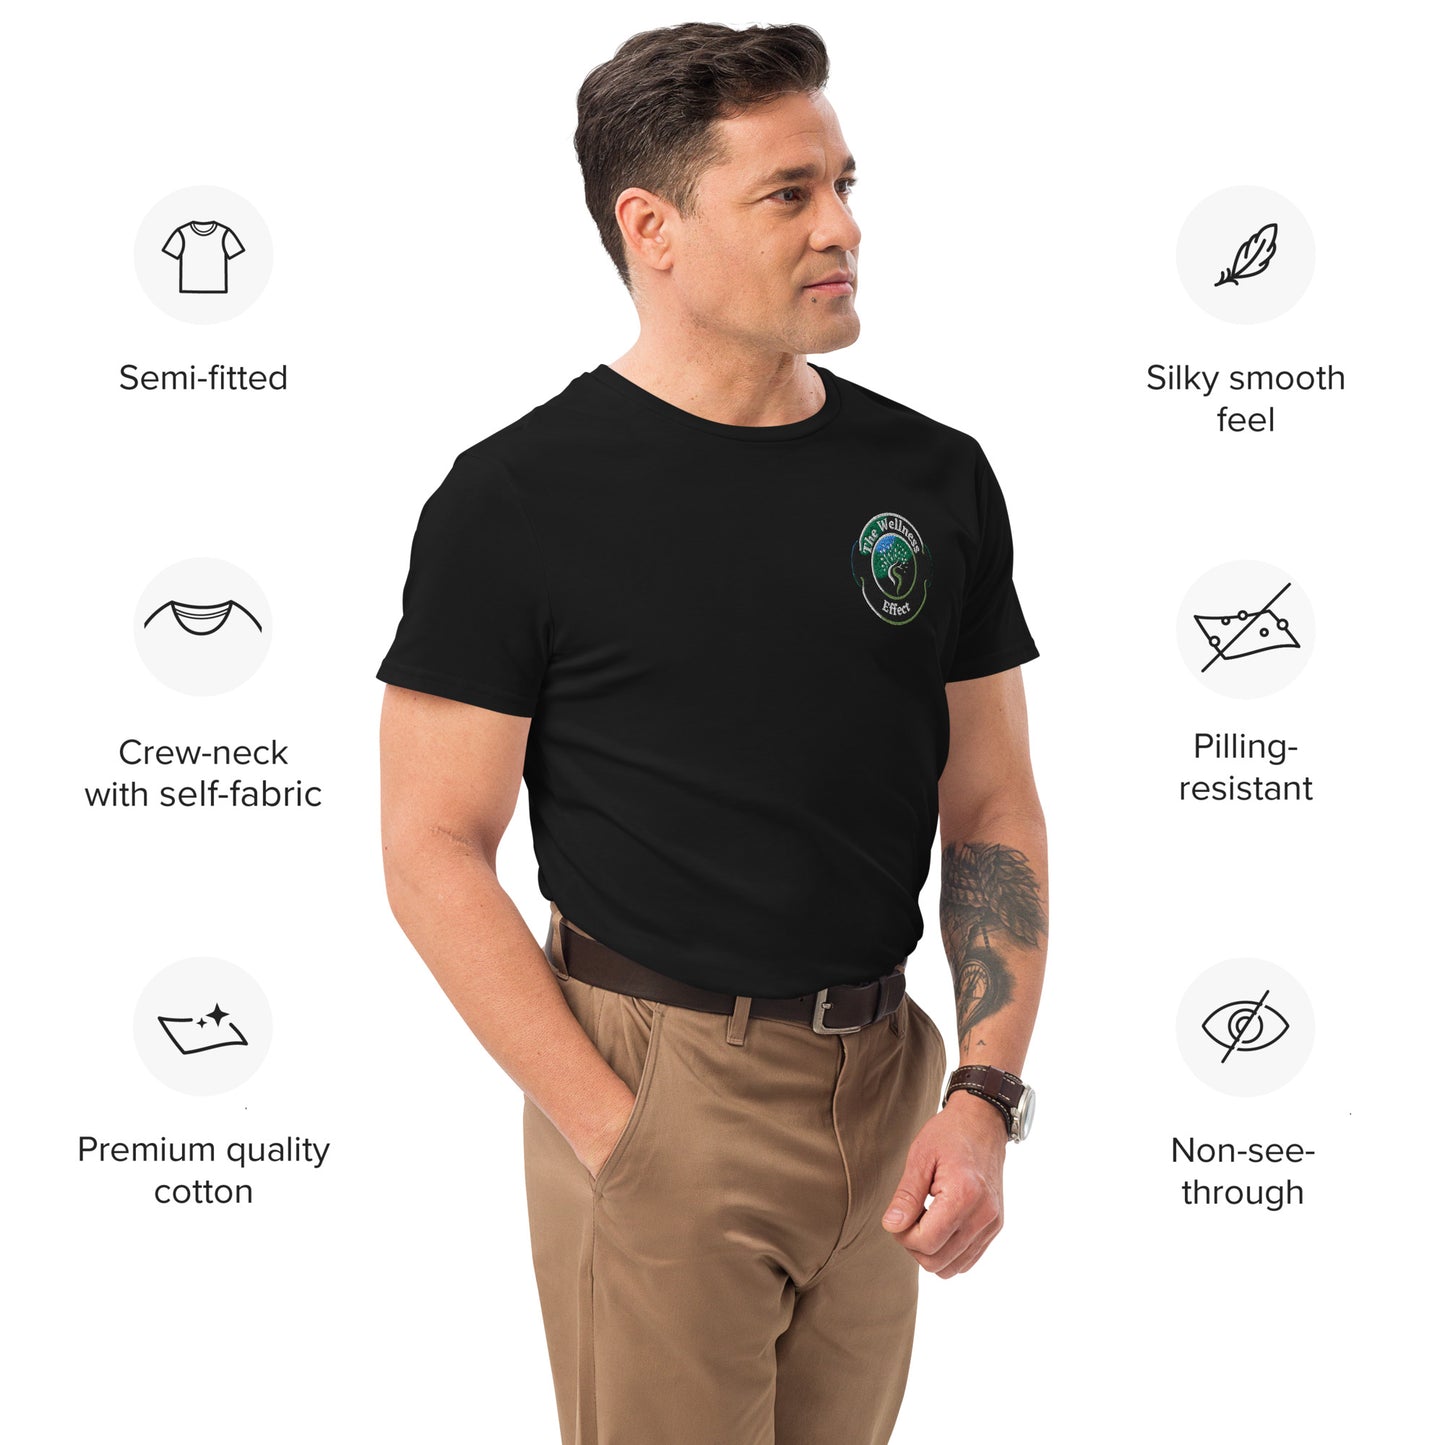 The Wellness Effect Men's premium cotton t-shirt